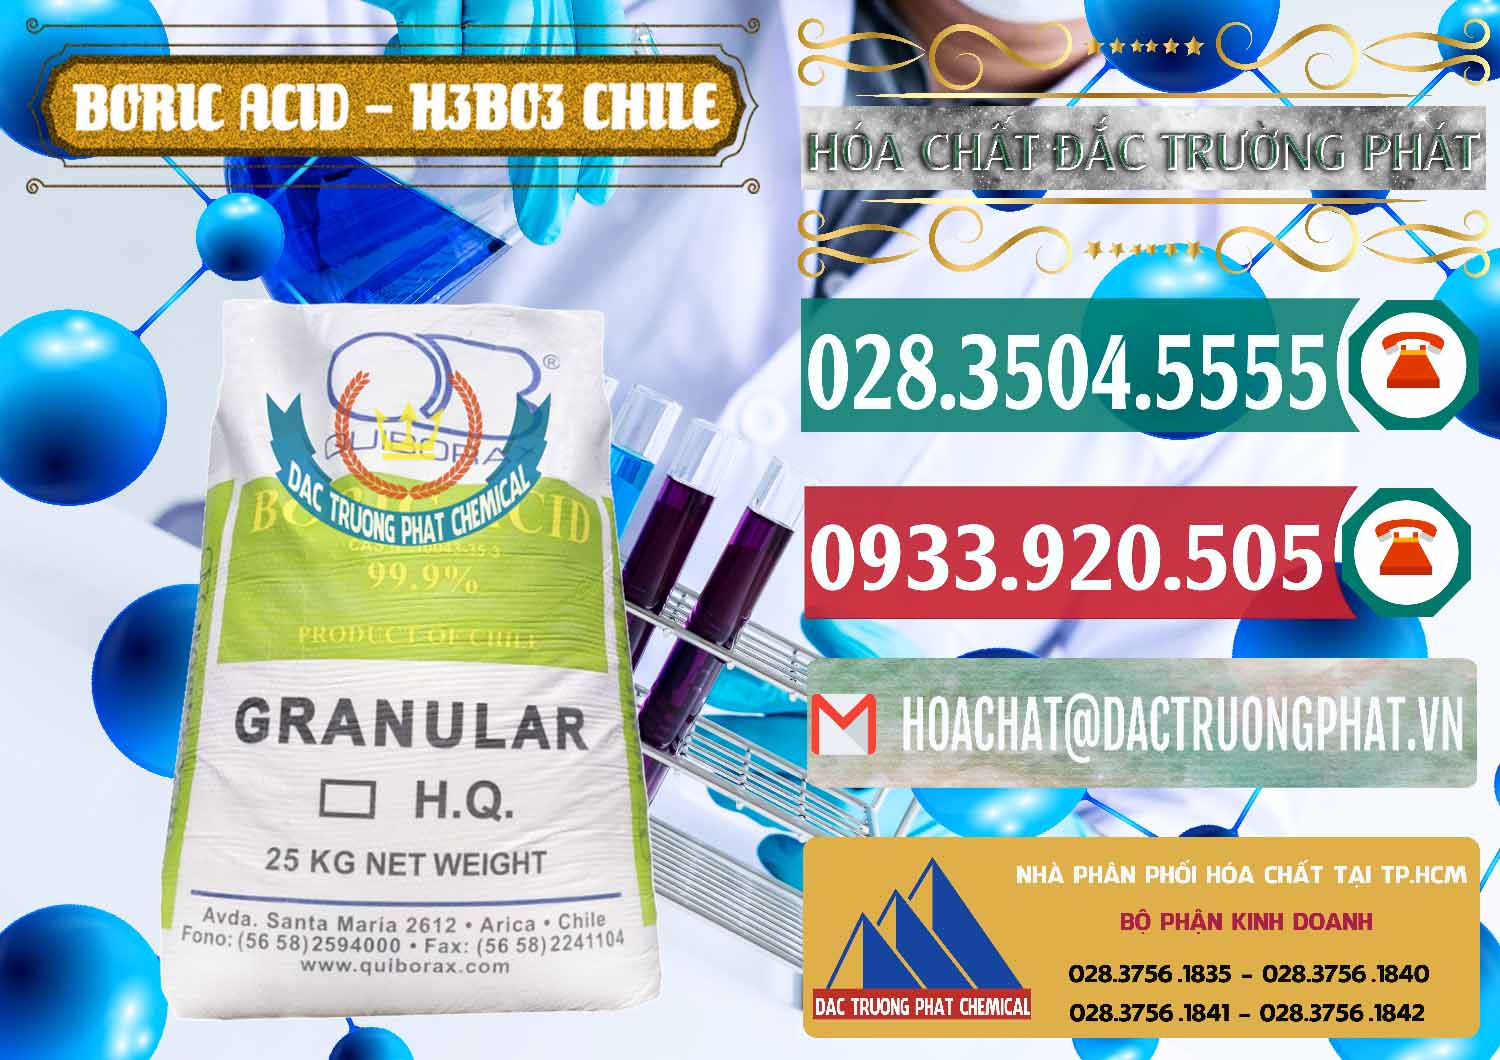 Nơi chuyên cung cấp và bán Acid Boric – Axit Boric H3BO3 99% Quiborax Chile - 0281 - Công ty cung ứng & phân phối hóa chất tại TP.HCM - muabanhoachat.vn